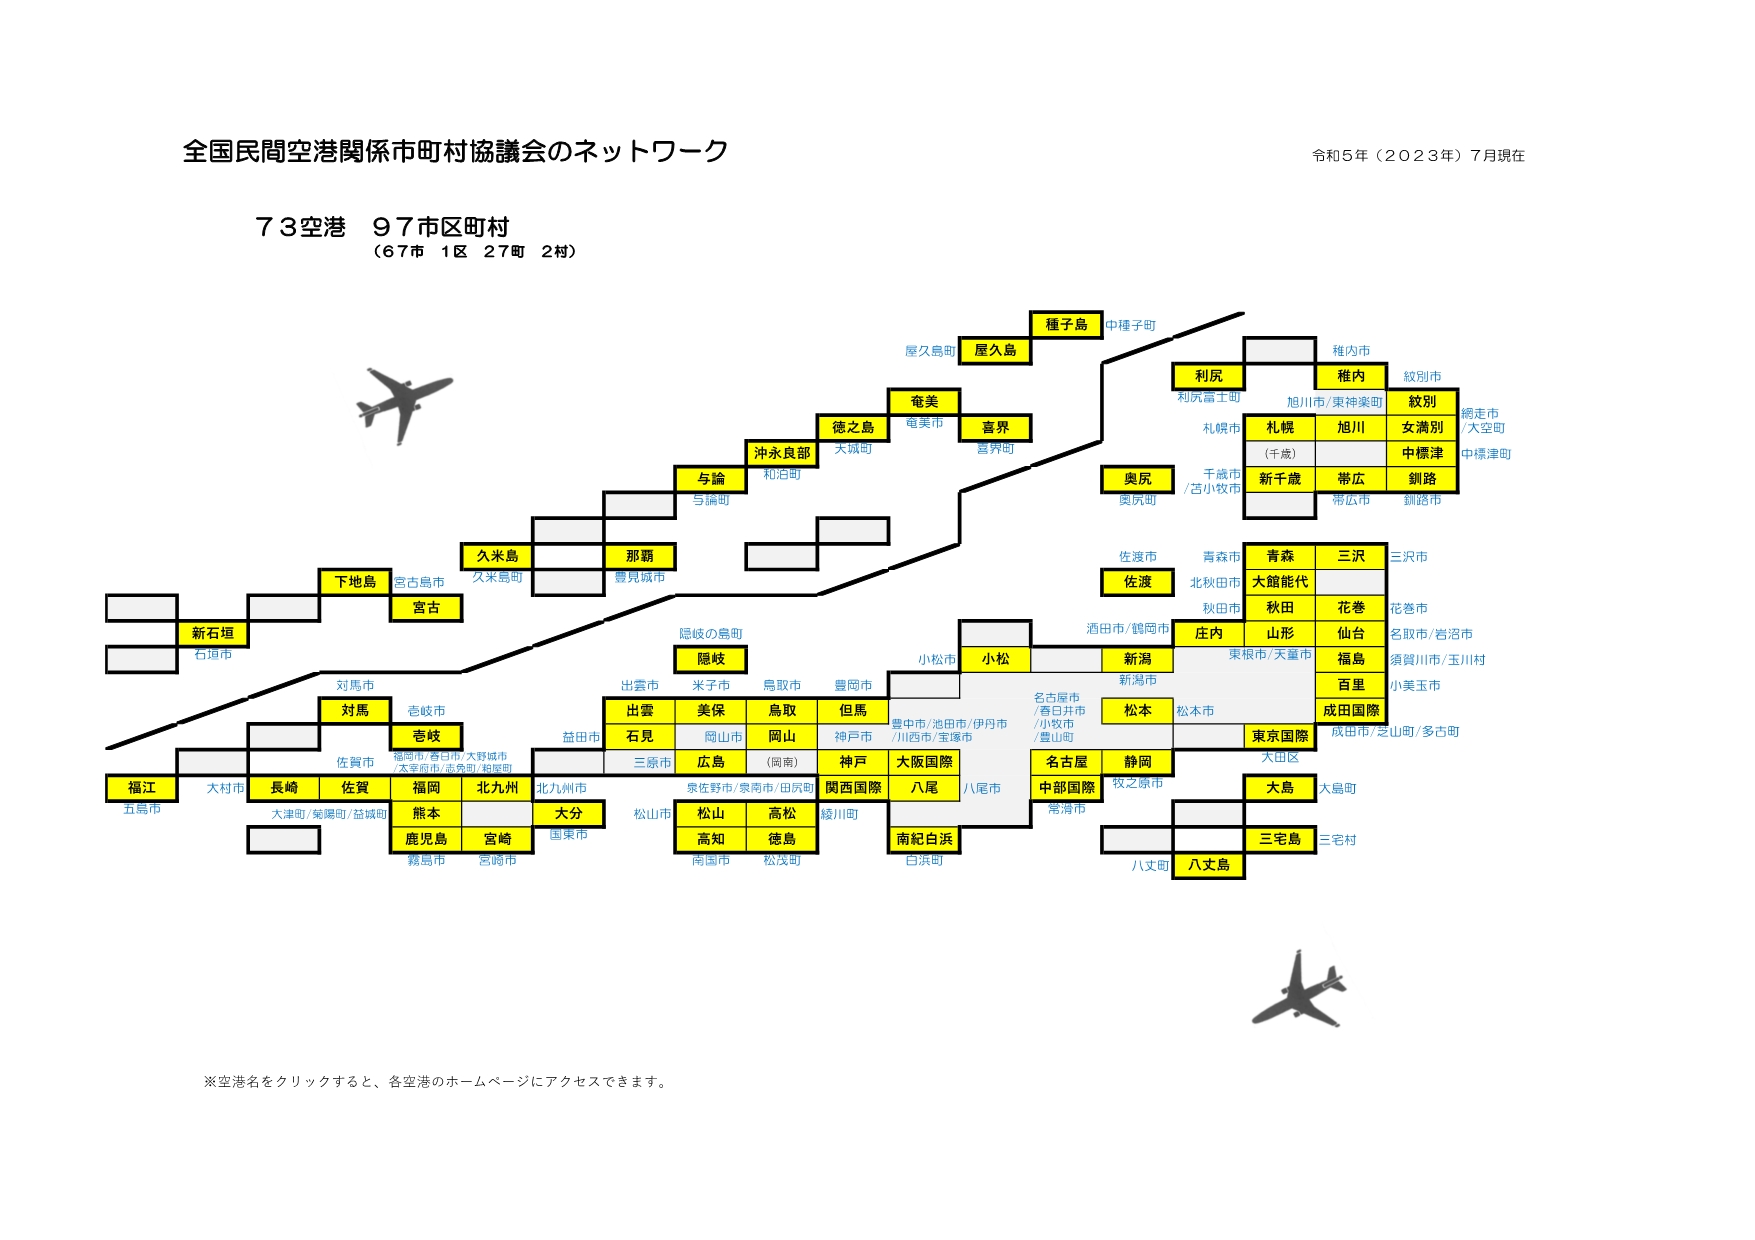 関係空港図イメージ